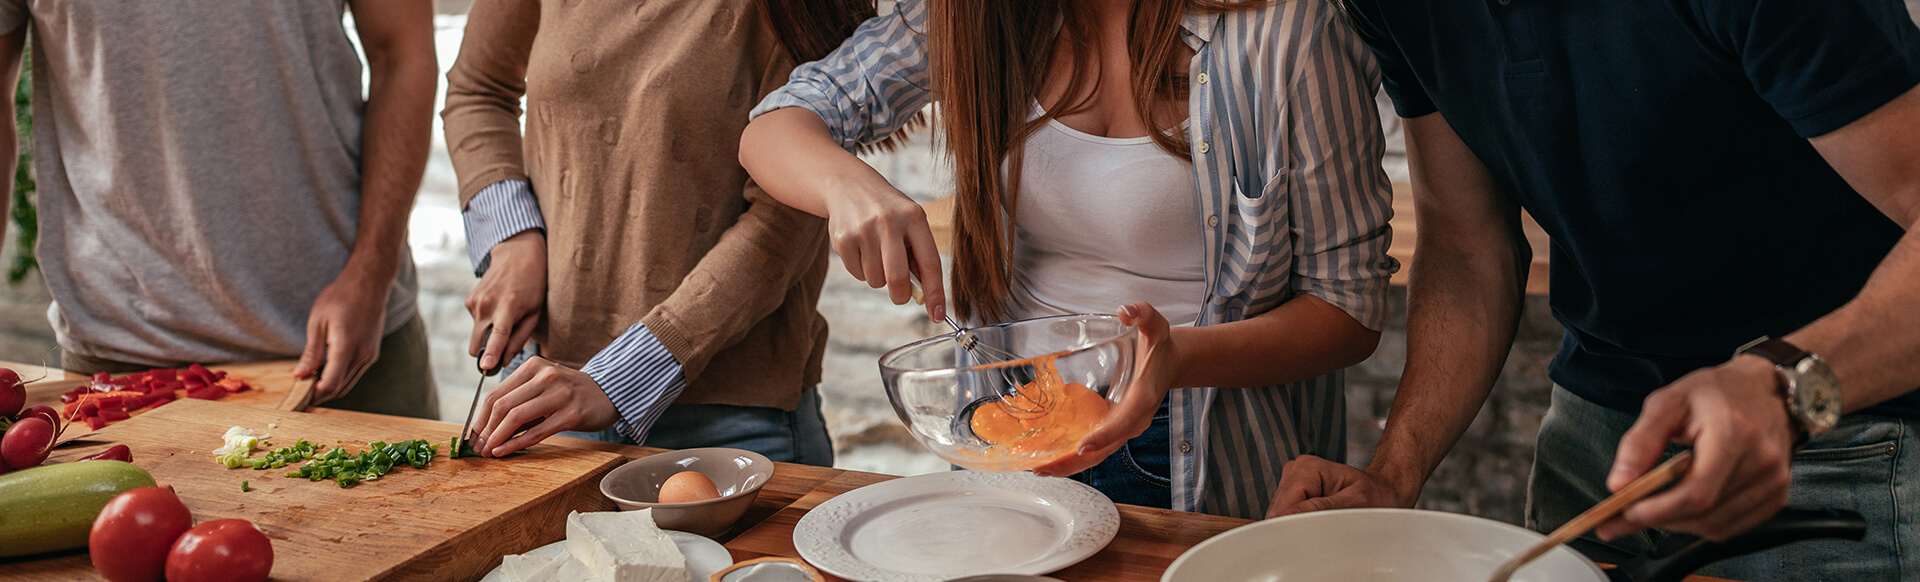 Cocina con amigas: muéstrales tus habilidades culinarias